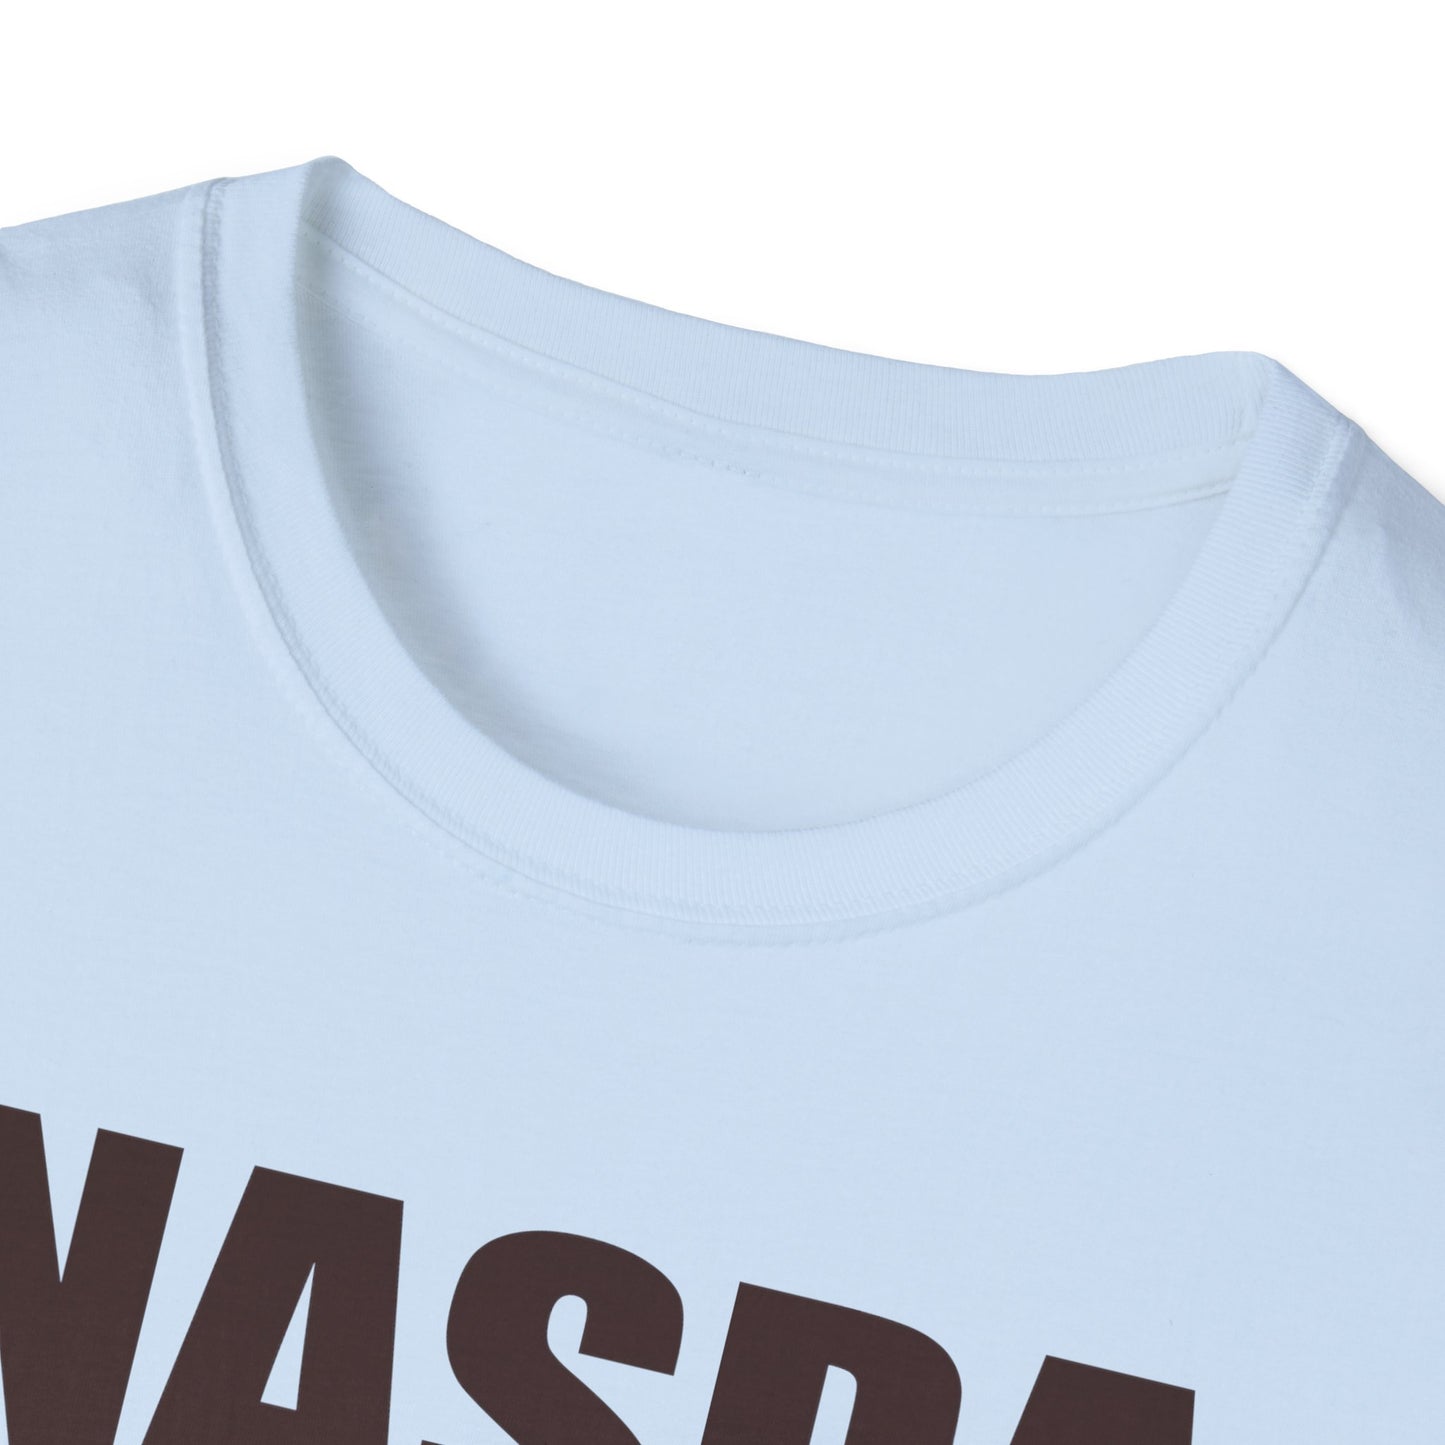 CORGI 2 NASDA  Unisex Softstyle T-Shirt